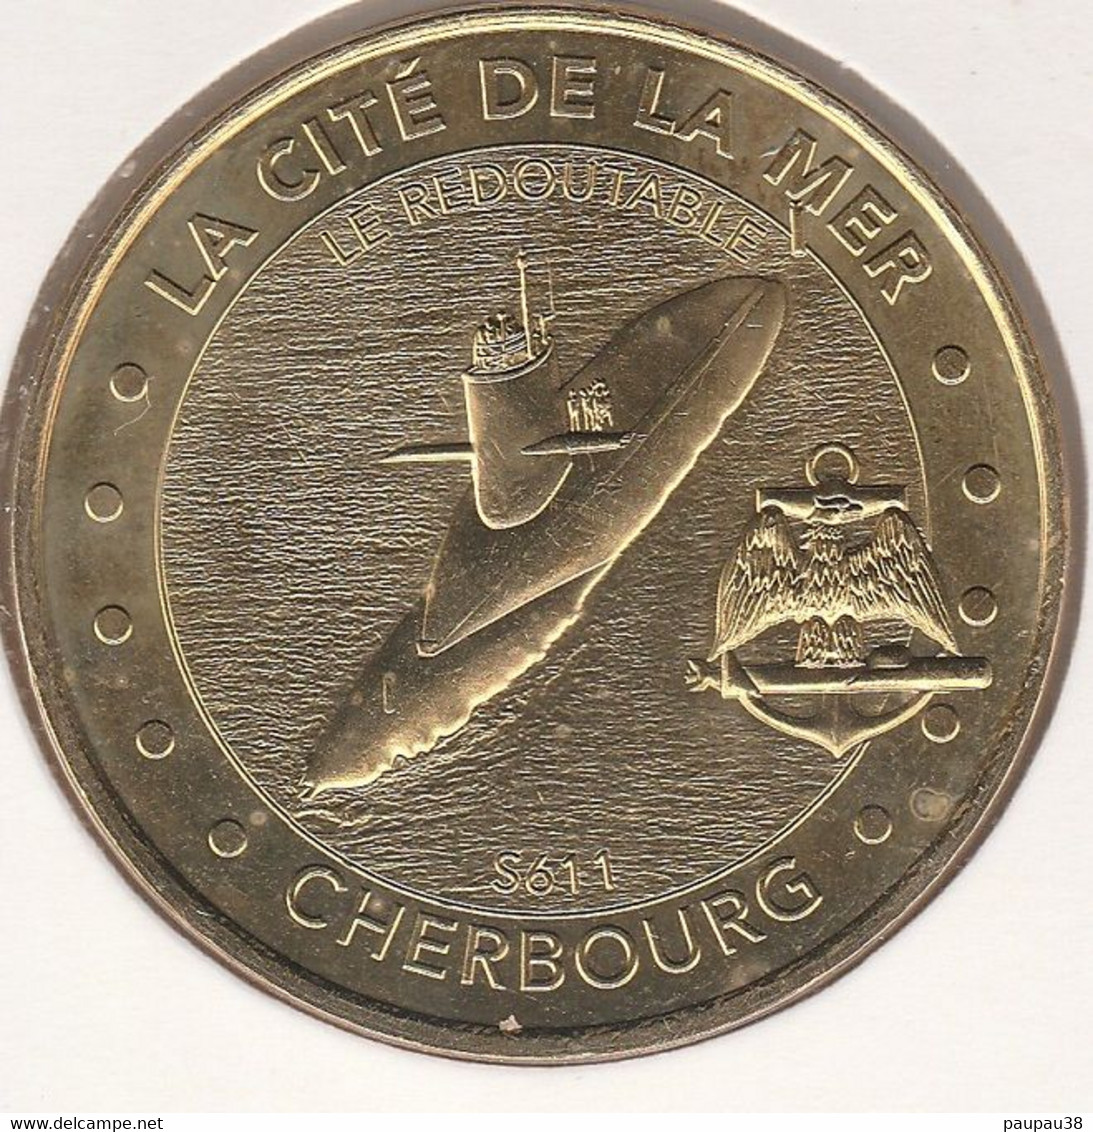 MONNAIE DE PARIS 2014 - 50 CHERBOURG-OCTEVILLE La Cité De La Mer - Le Redoutable S611 Et L'ancre Blasonnée - 2014